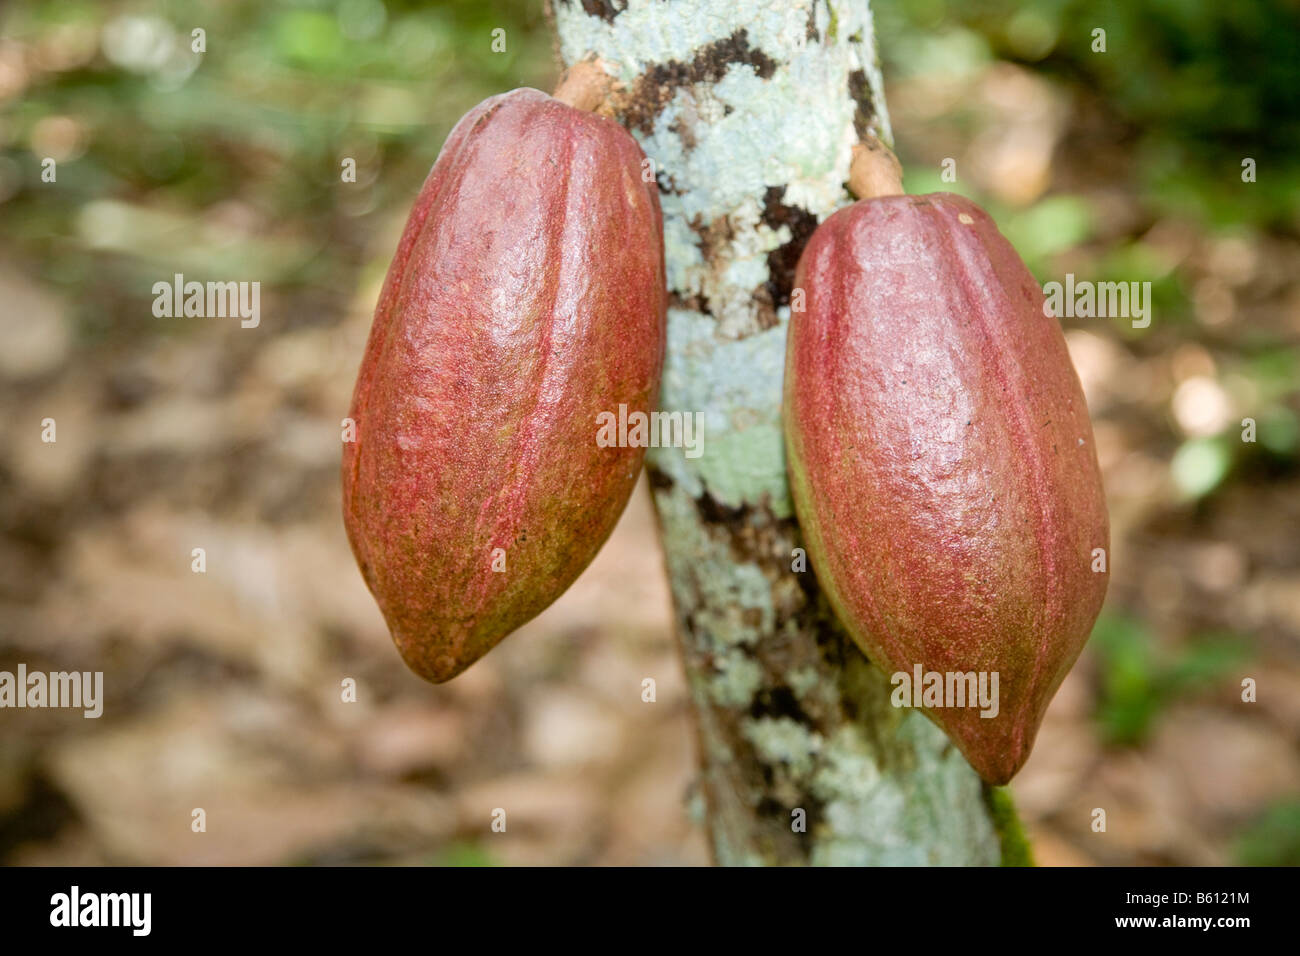 Fruits de cacao non mûres, les gousses, sur un cacaoyer, plantation de cacao, Hacienda Bukare, la culture du cacao et de la transformation, de l'Chacaracual Banque D'Images